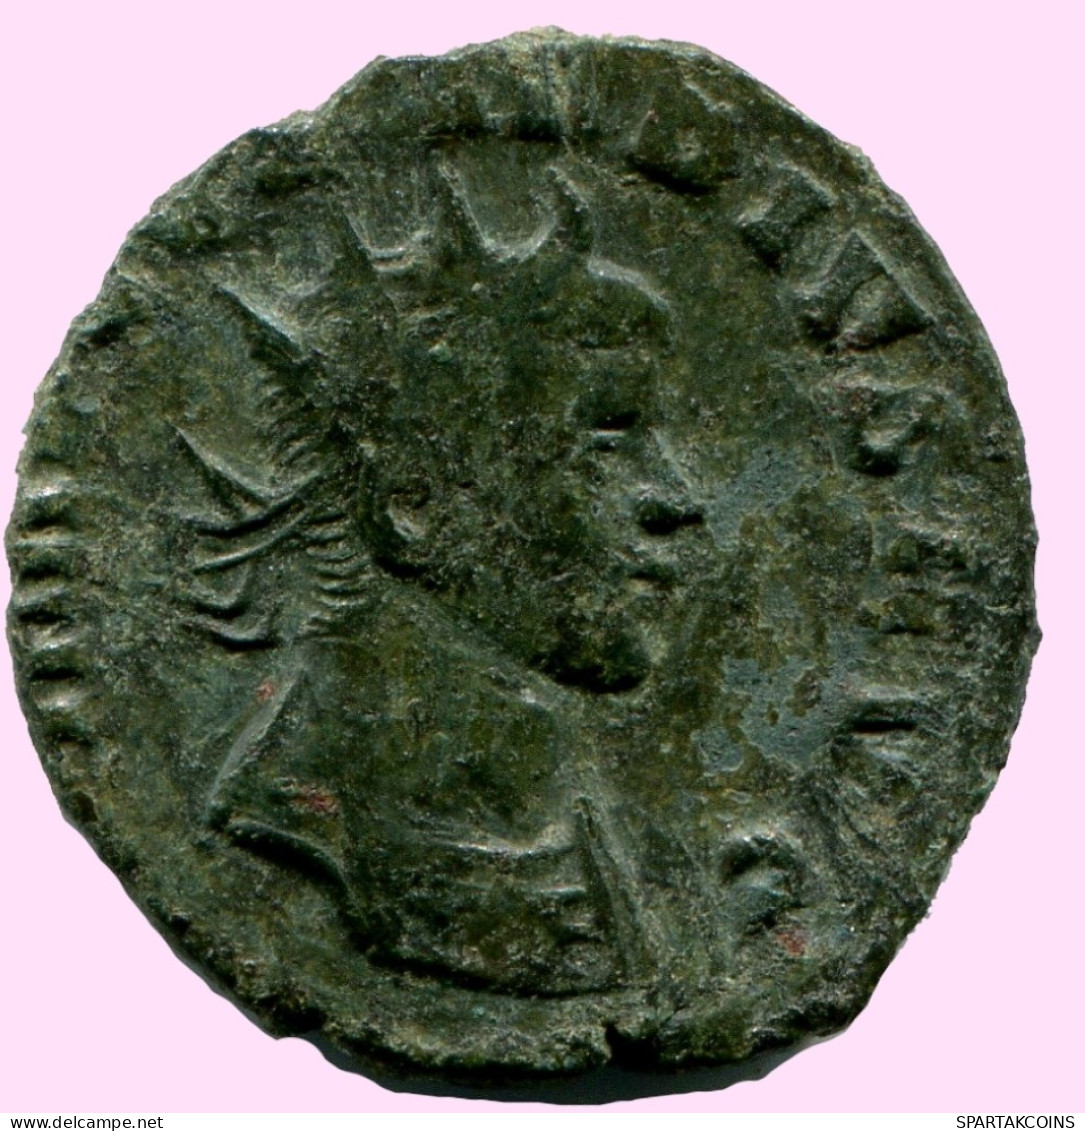 CLAUDIUS II GOTHICUS ANTONINIANUS Ancient ROMAN Coin #ANC11980.25.U.A - Der Soldatenkaiser (die Militärkrise) (235 / 284)